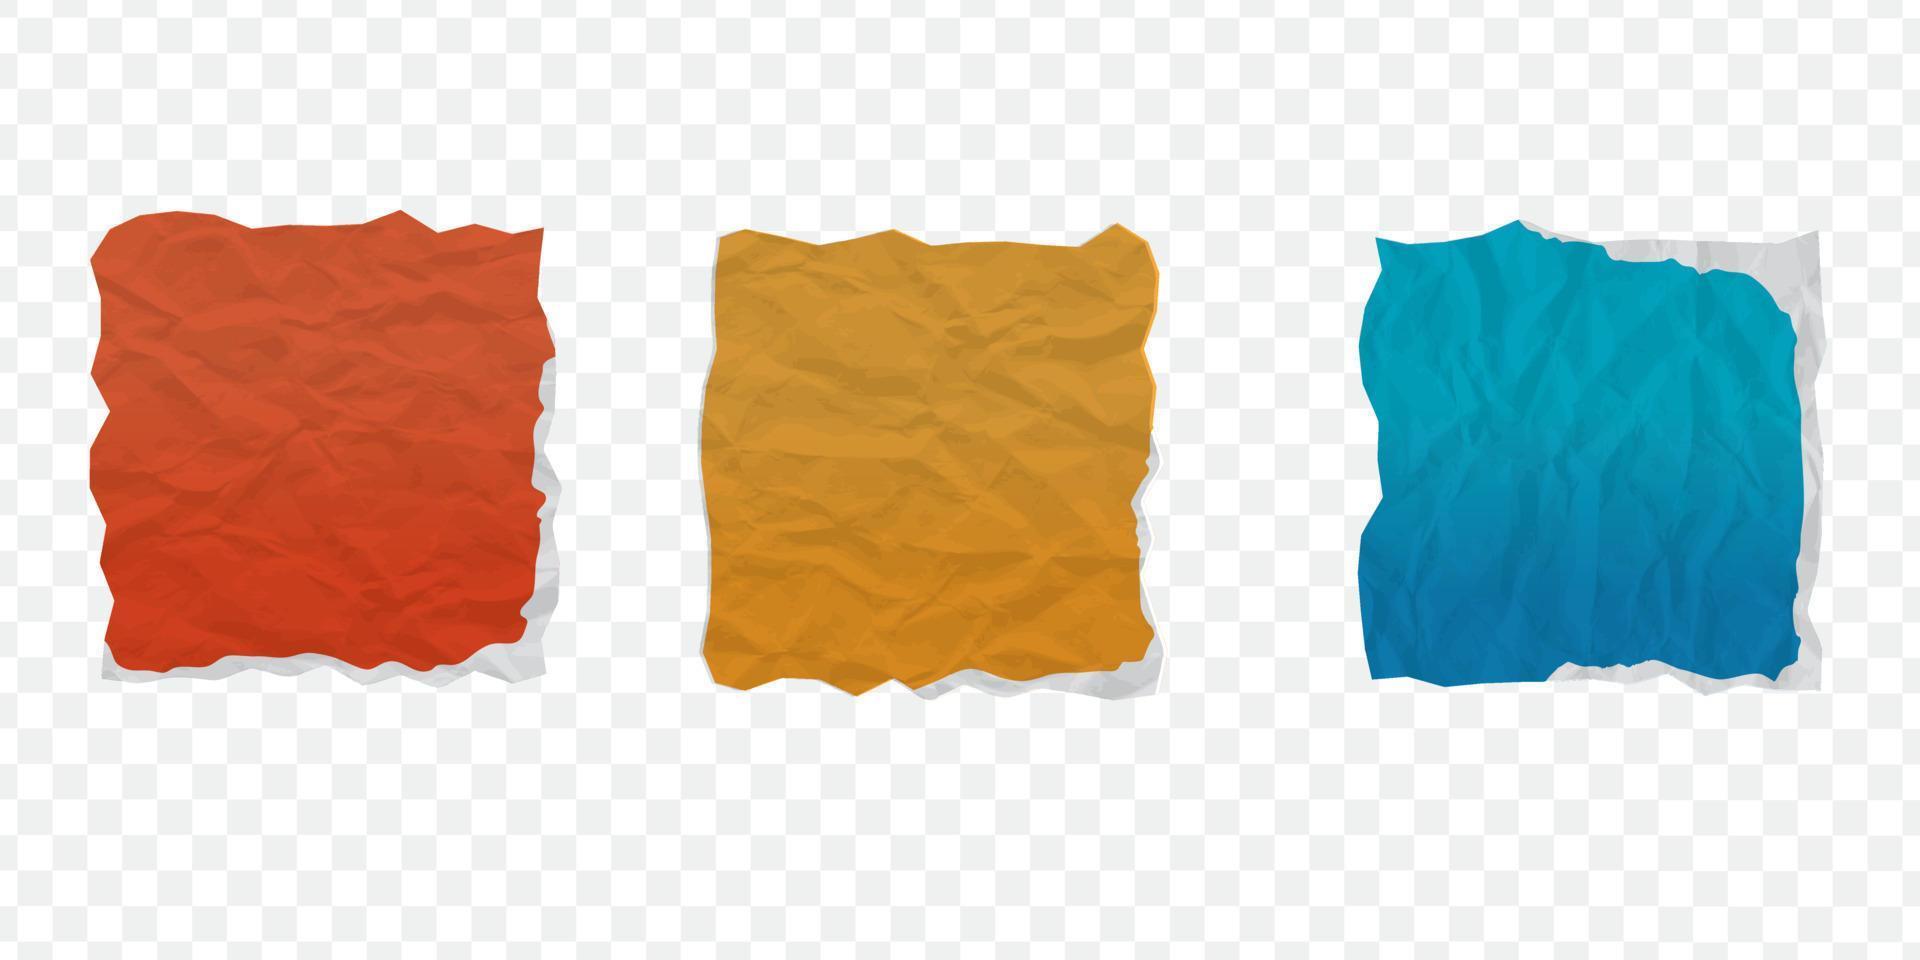 reeks van verfrommeld papier textuur. realistisch gerimpeld vel. gekleurde verfrommeld papier abstract achtergrond textuur. vector illustratie.